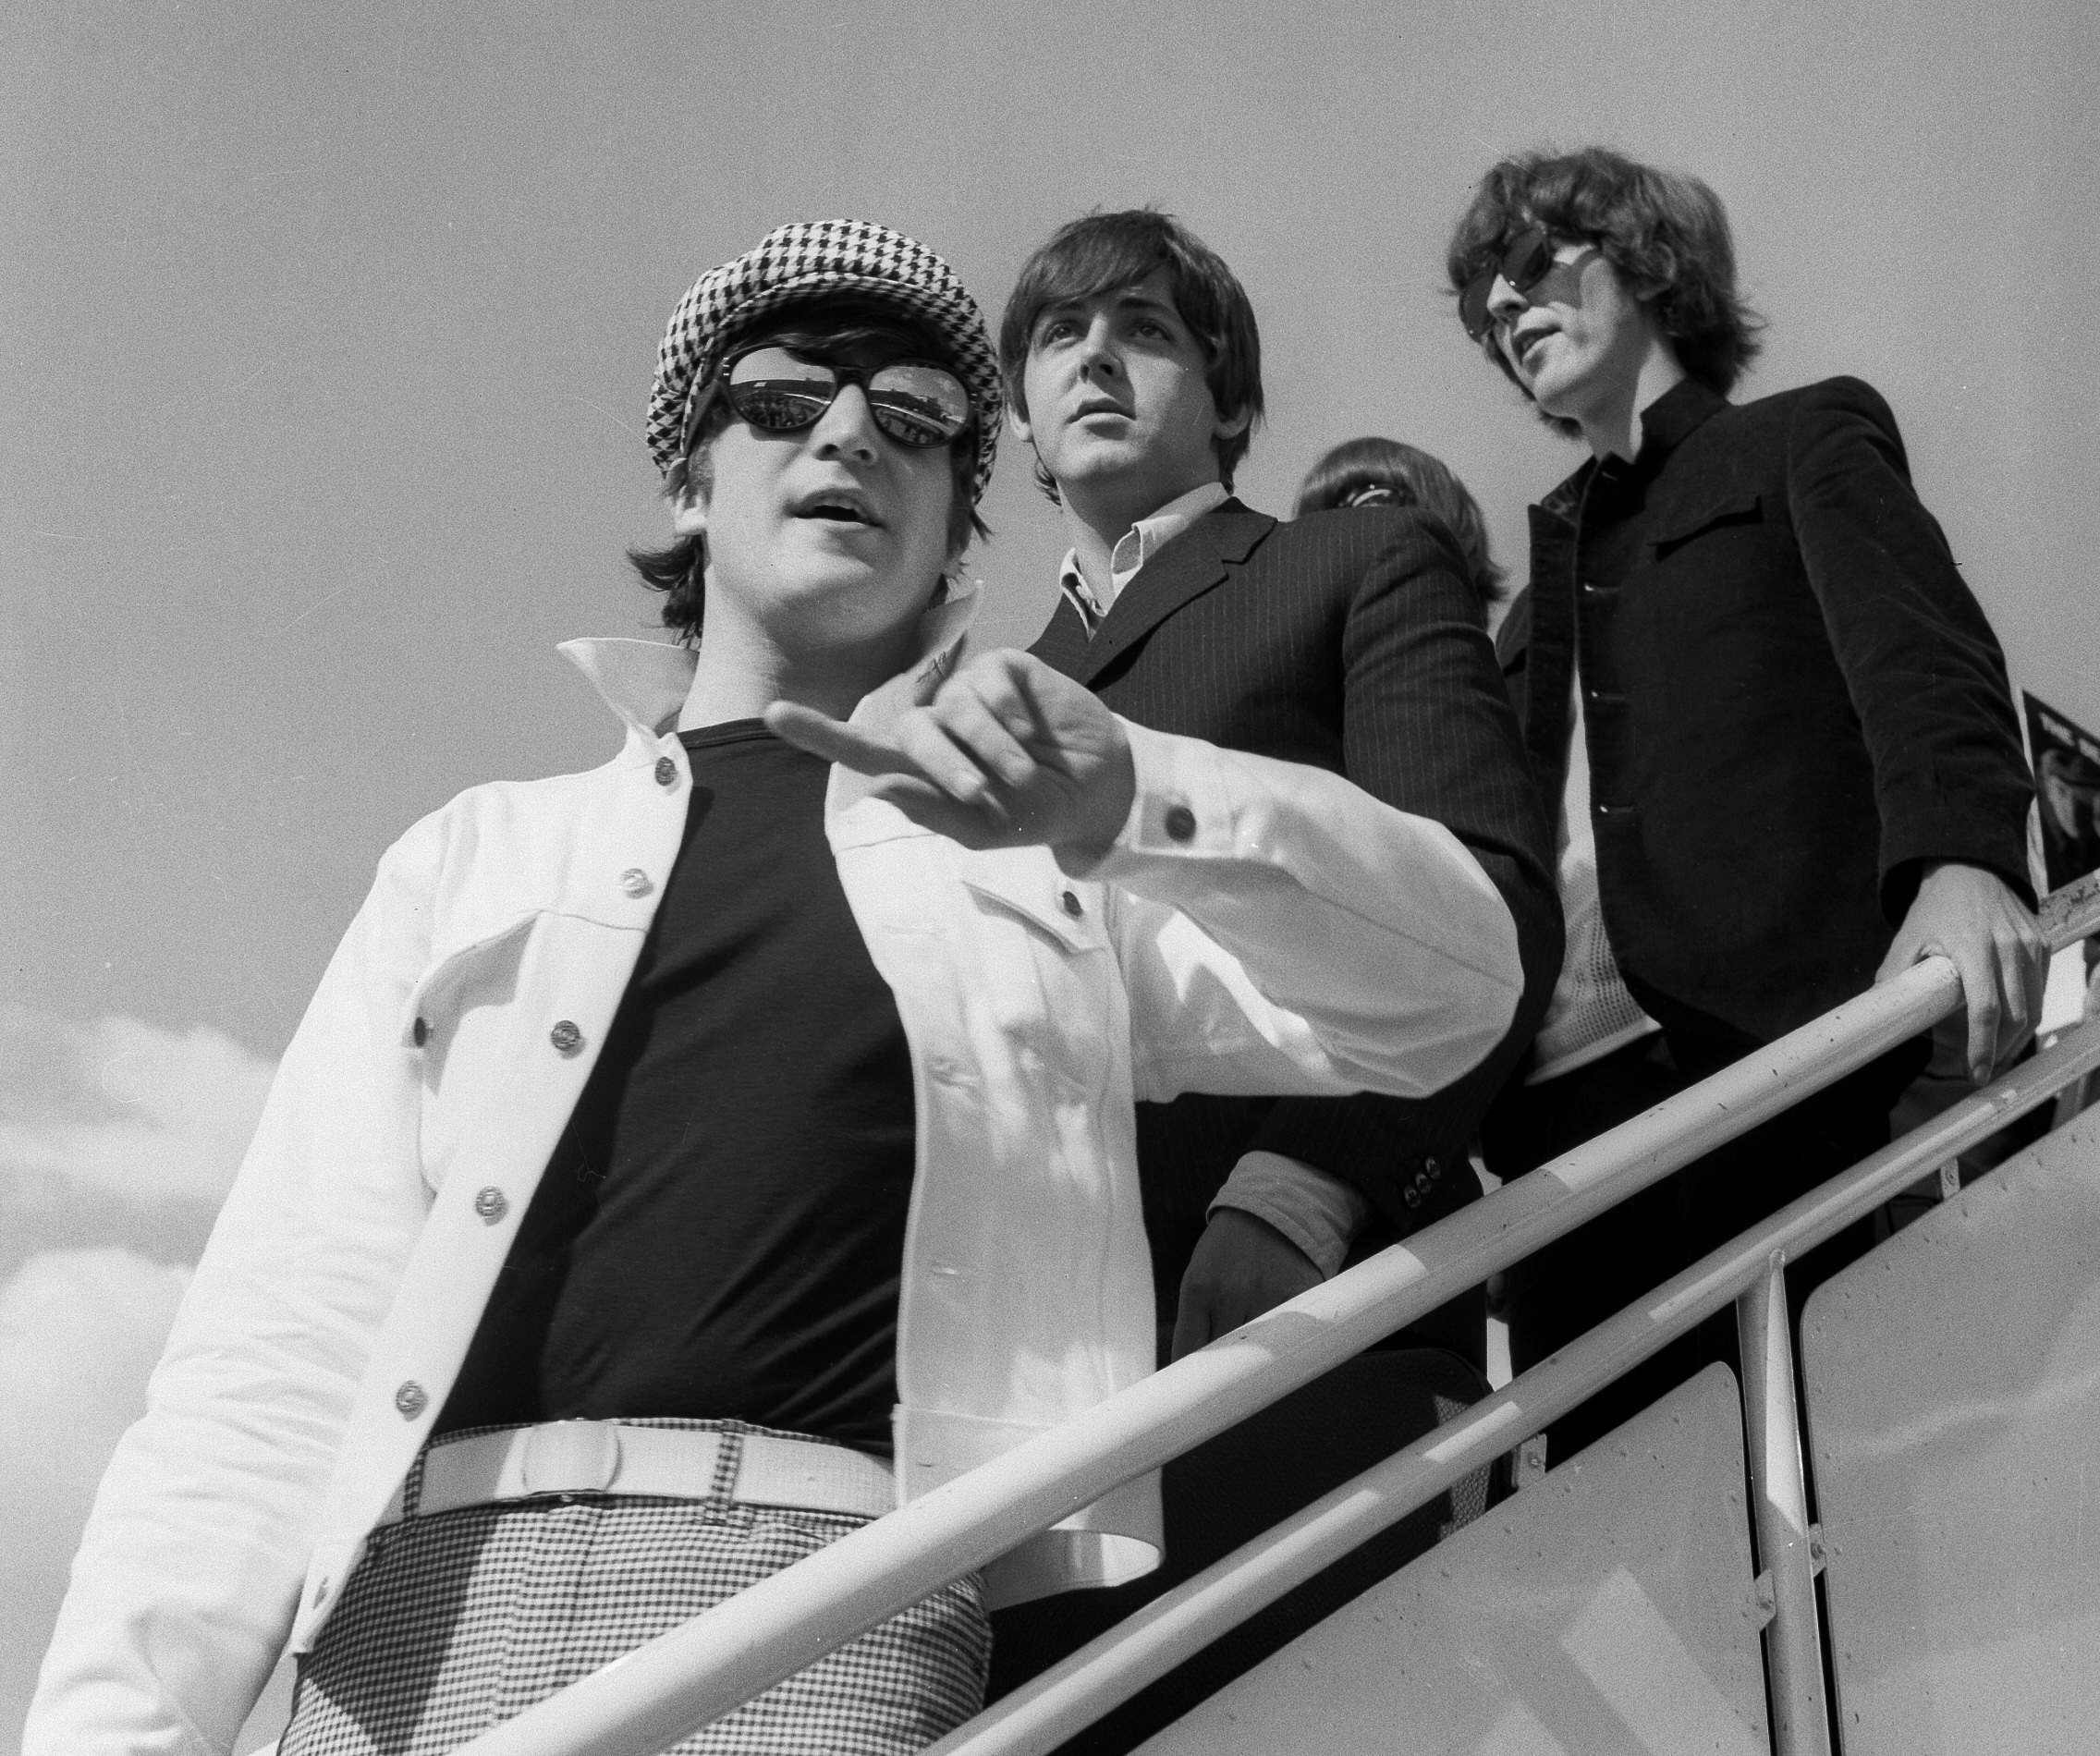 John Lennon y Paul McCartney se convirtieron en una de las parejas de autores de canciones más importantes de todos los tiempos.